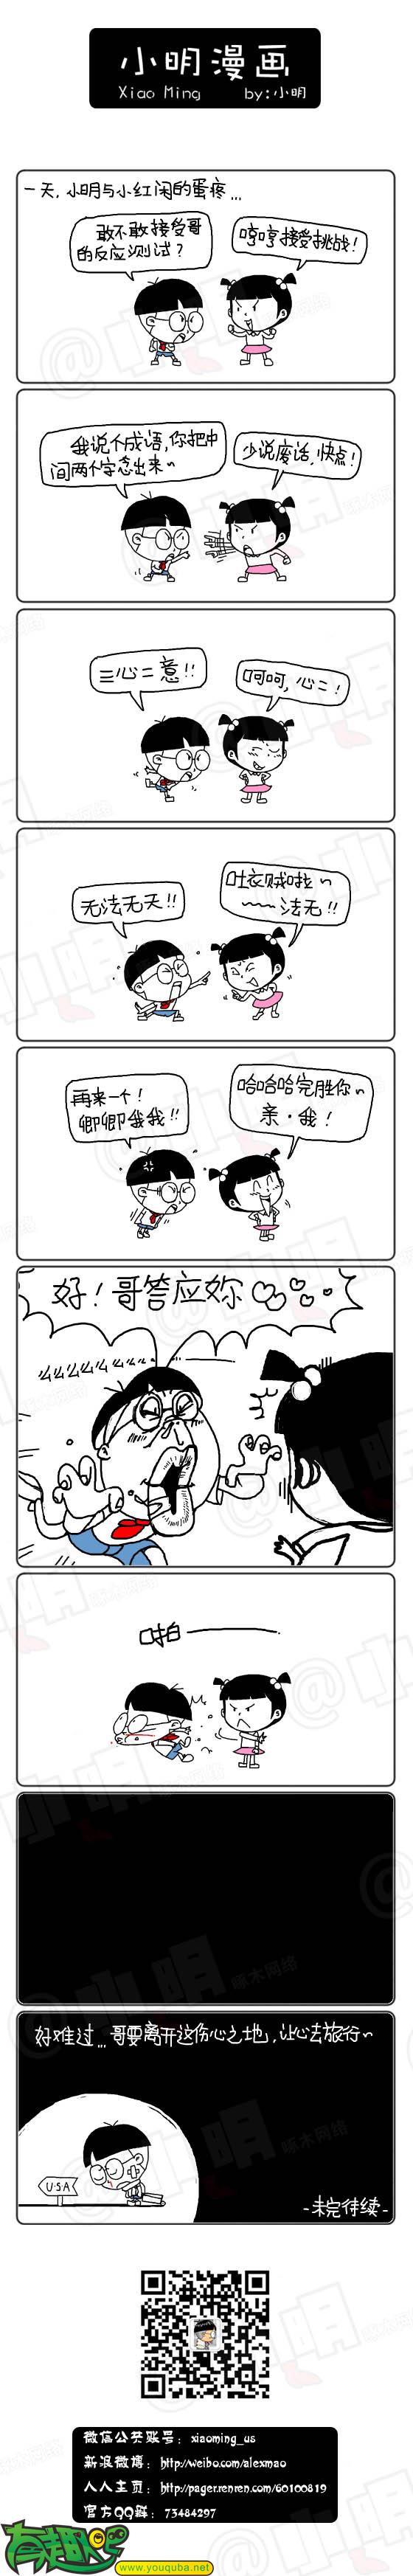 小明系列漫画:反应测试